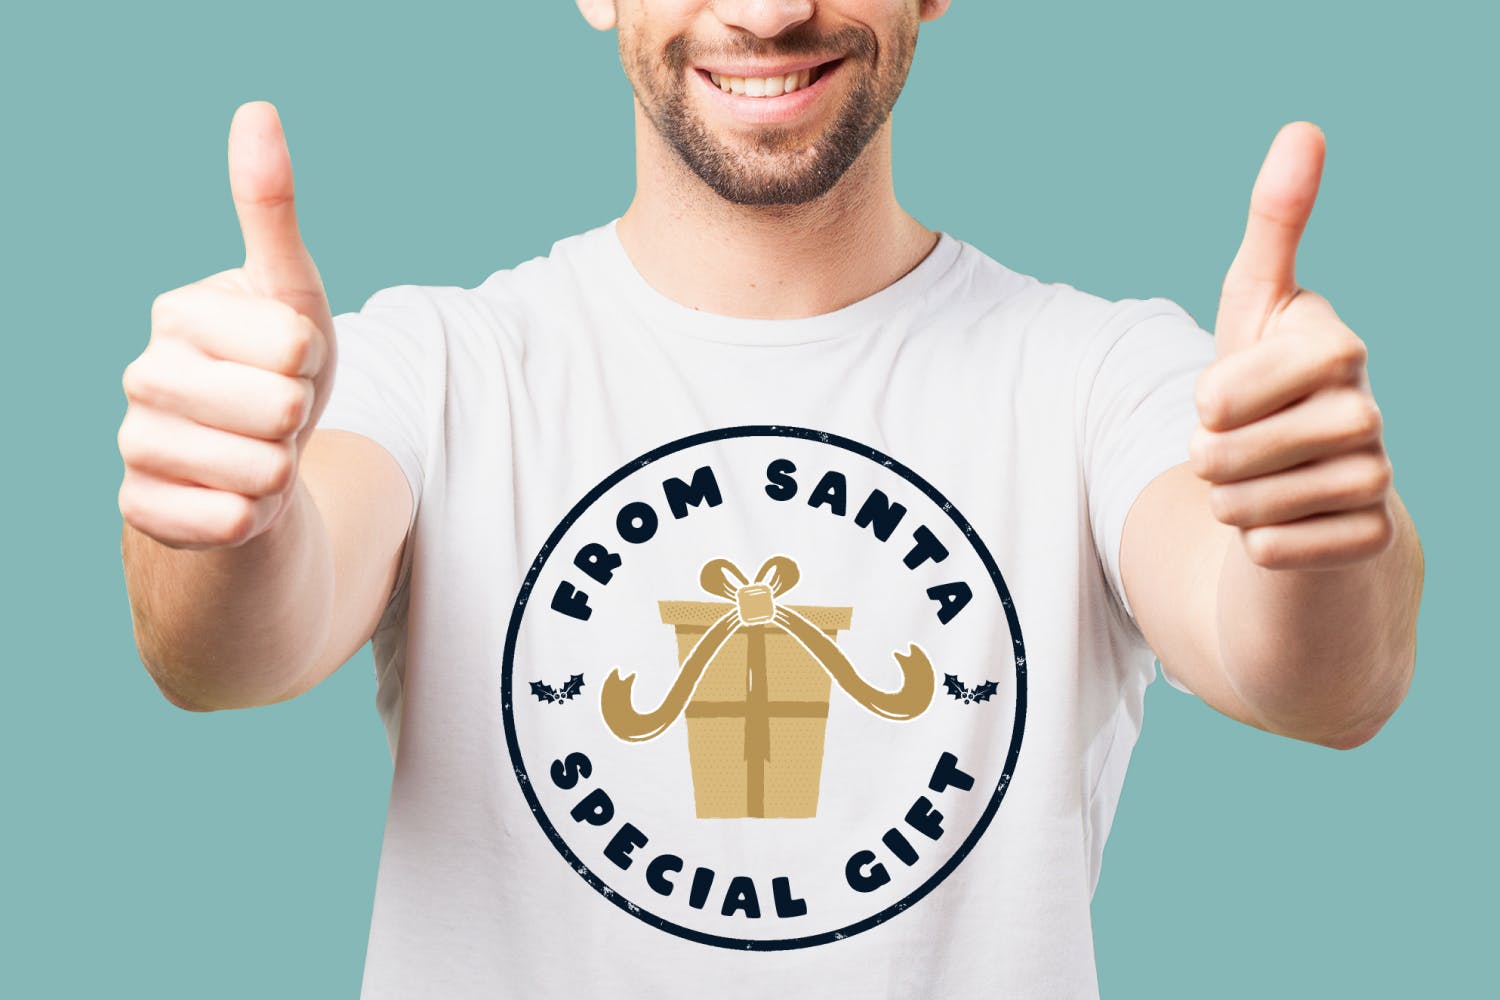 复古风格圣诞节主题T恤印花图案设计素材 Santa T-Shirt. Christmas Vector Print, Holiday SVG插图(3)